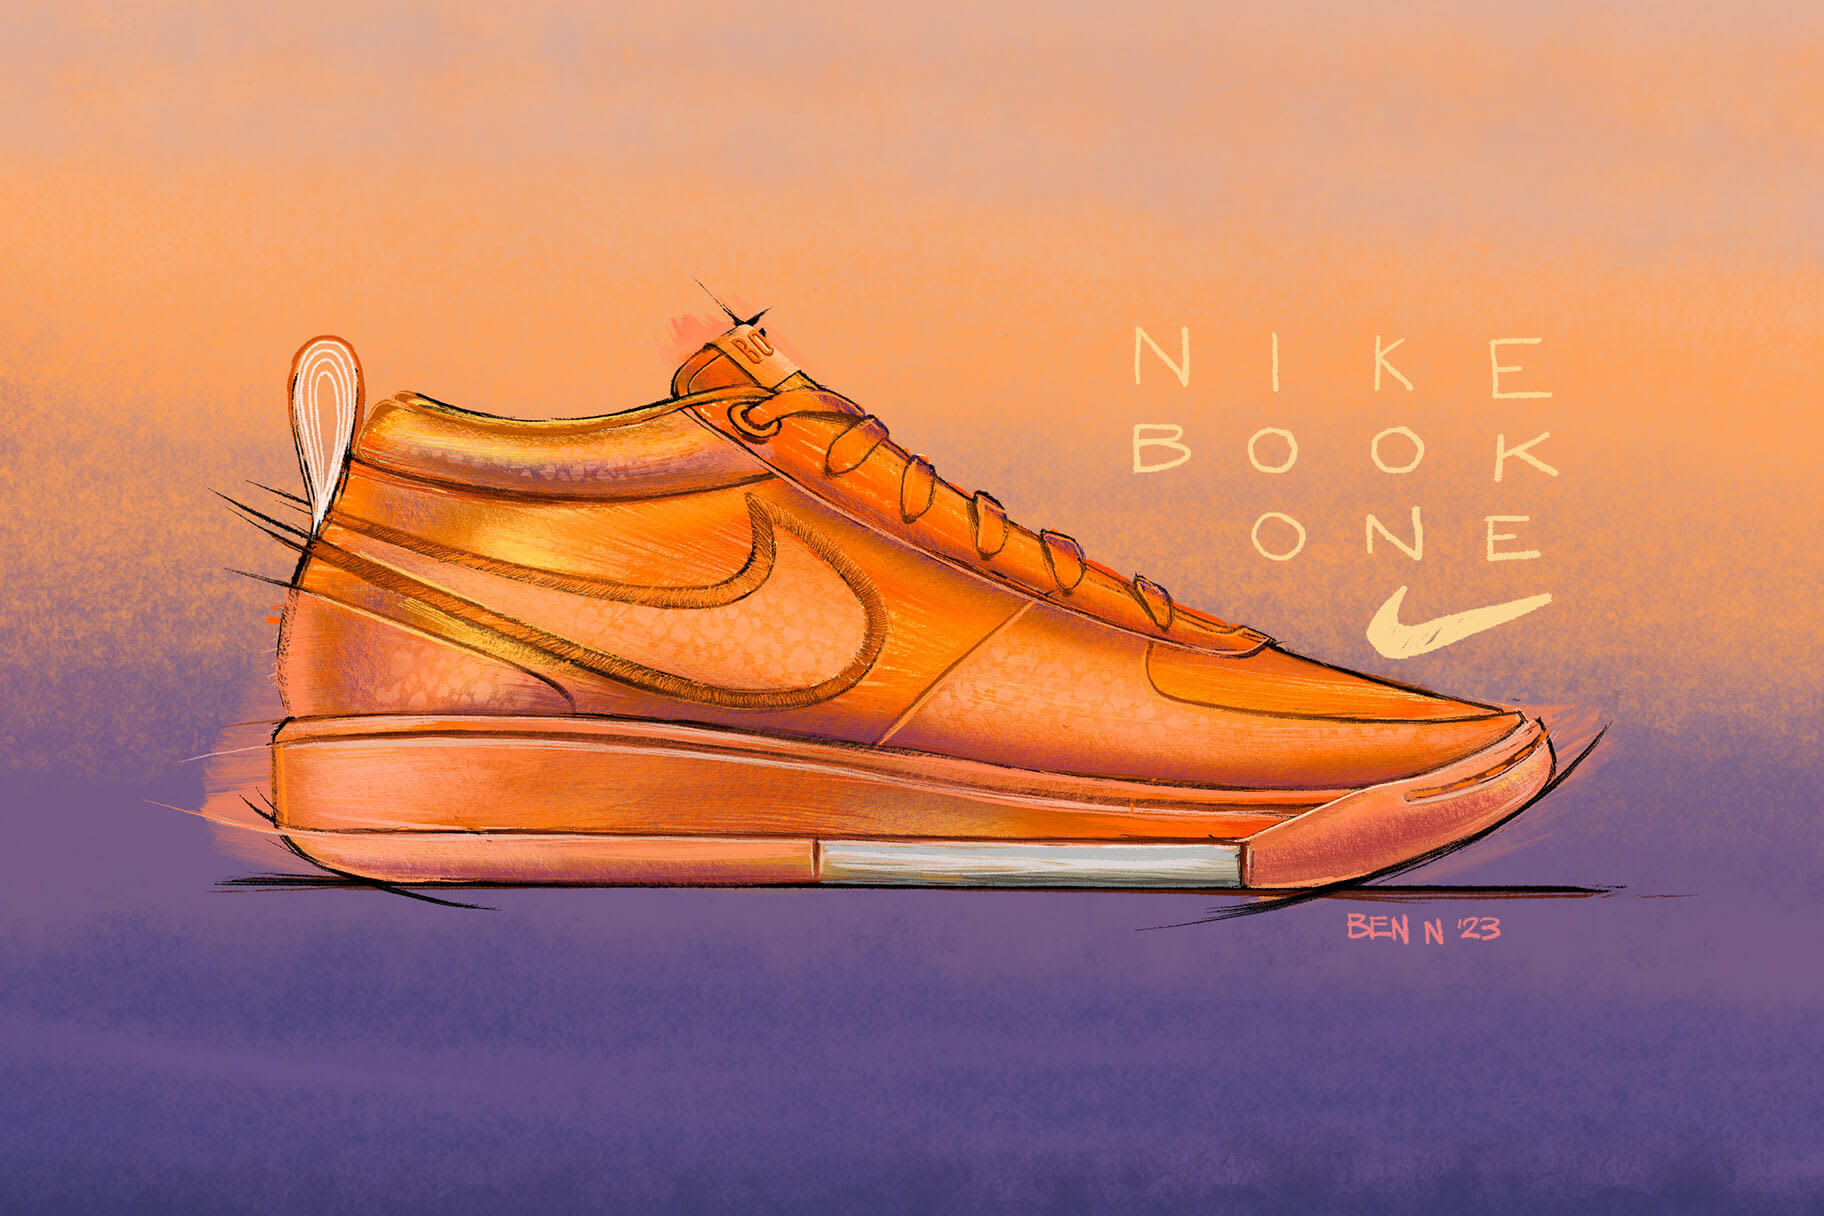 Nike introduceert eerste schoen in samenwerking met Devin Brooker, de Nike Book 1